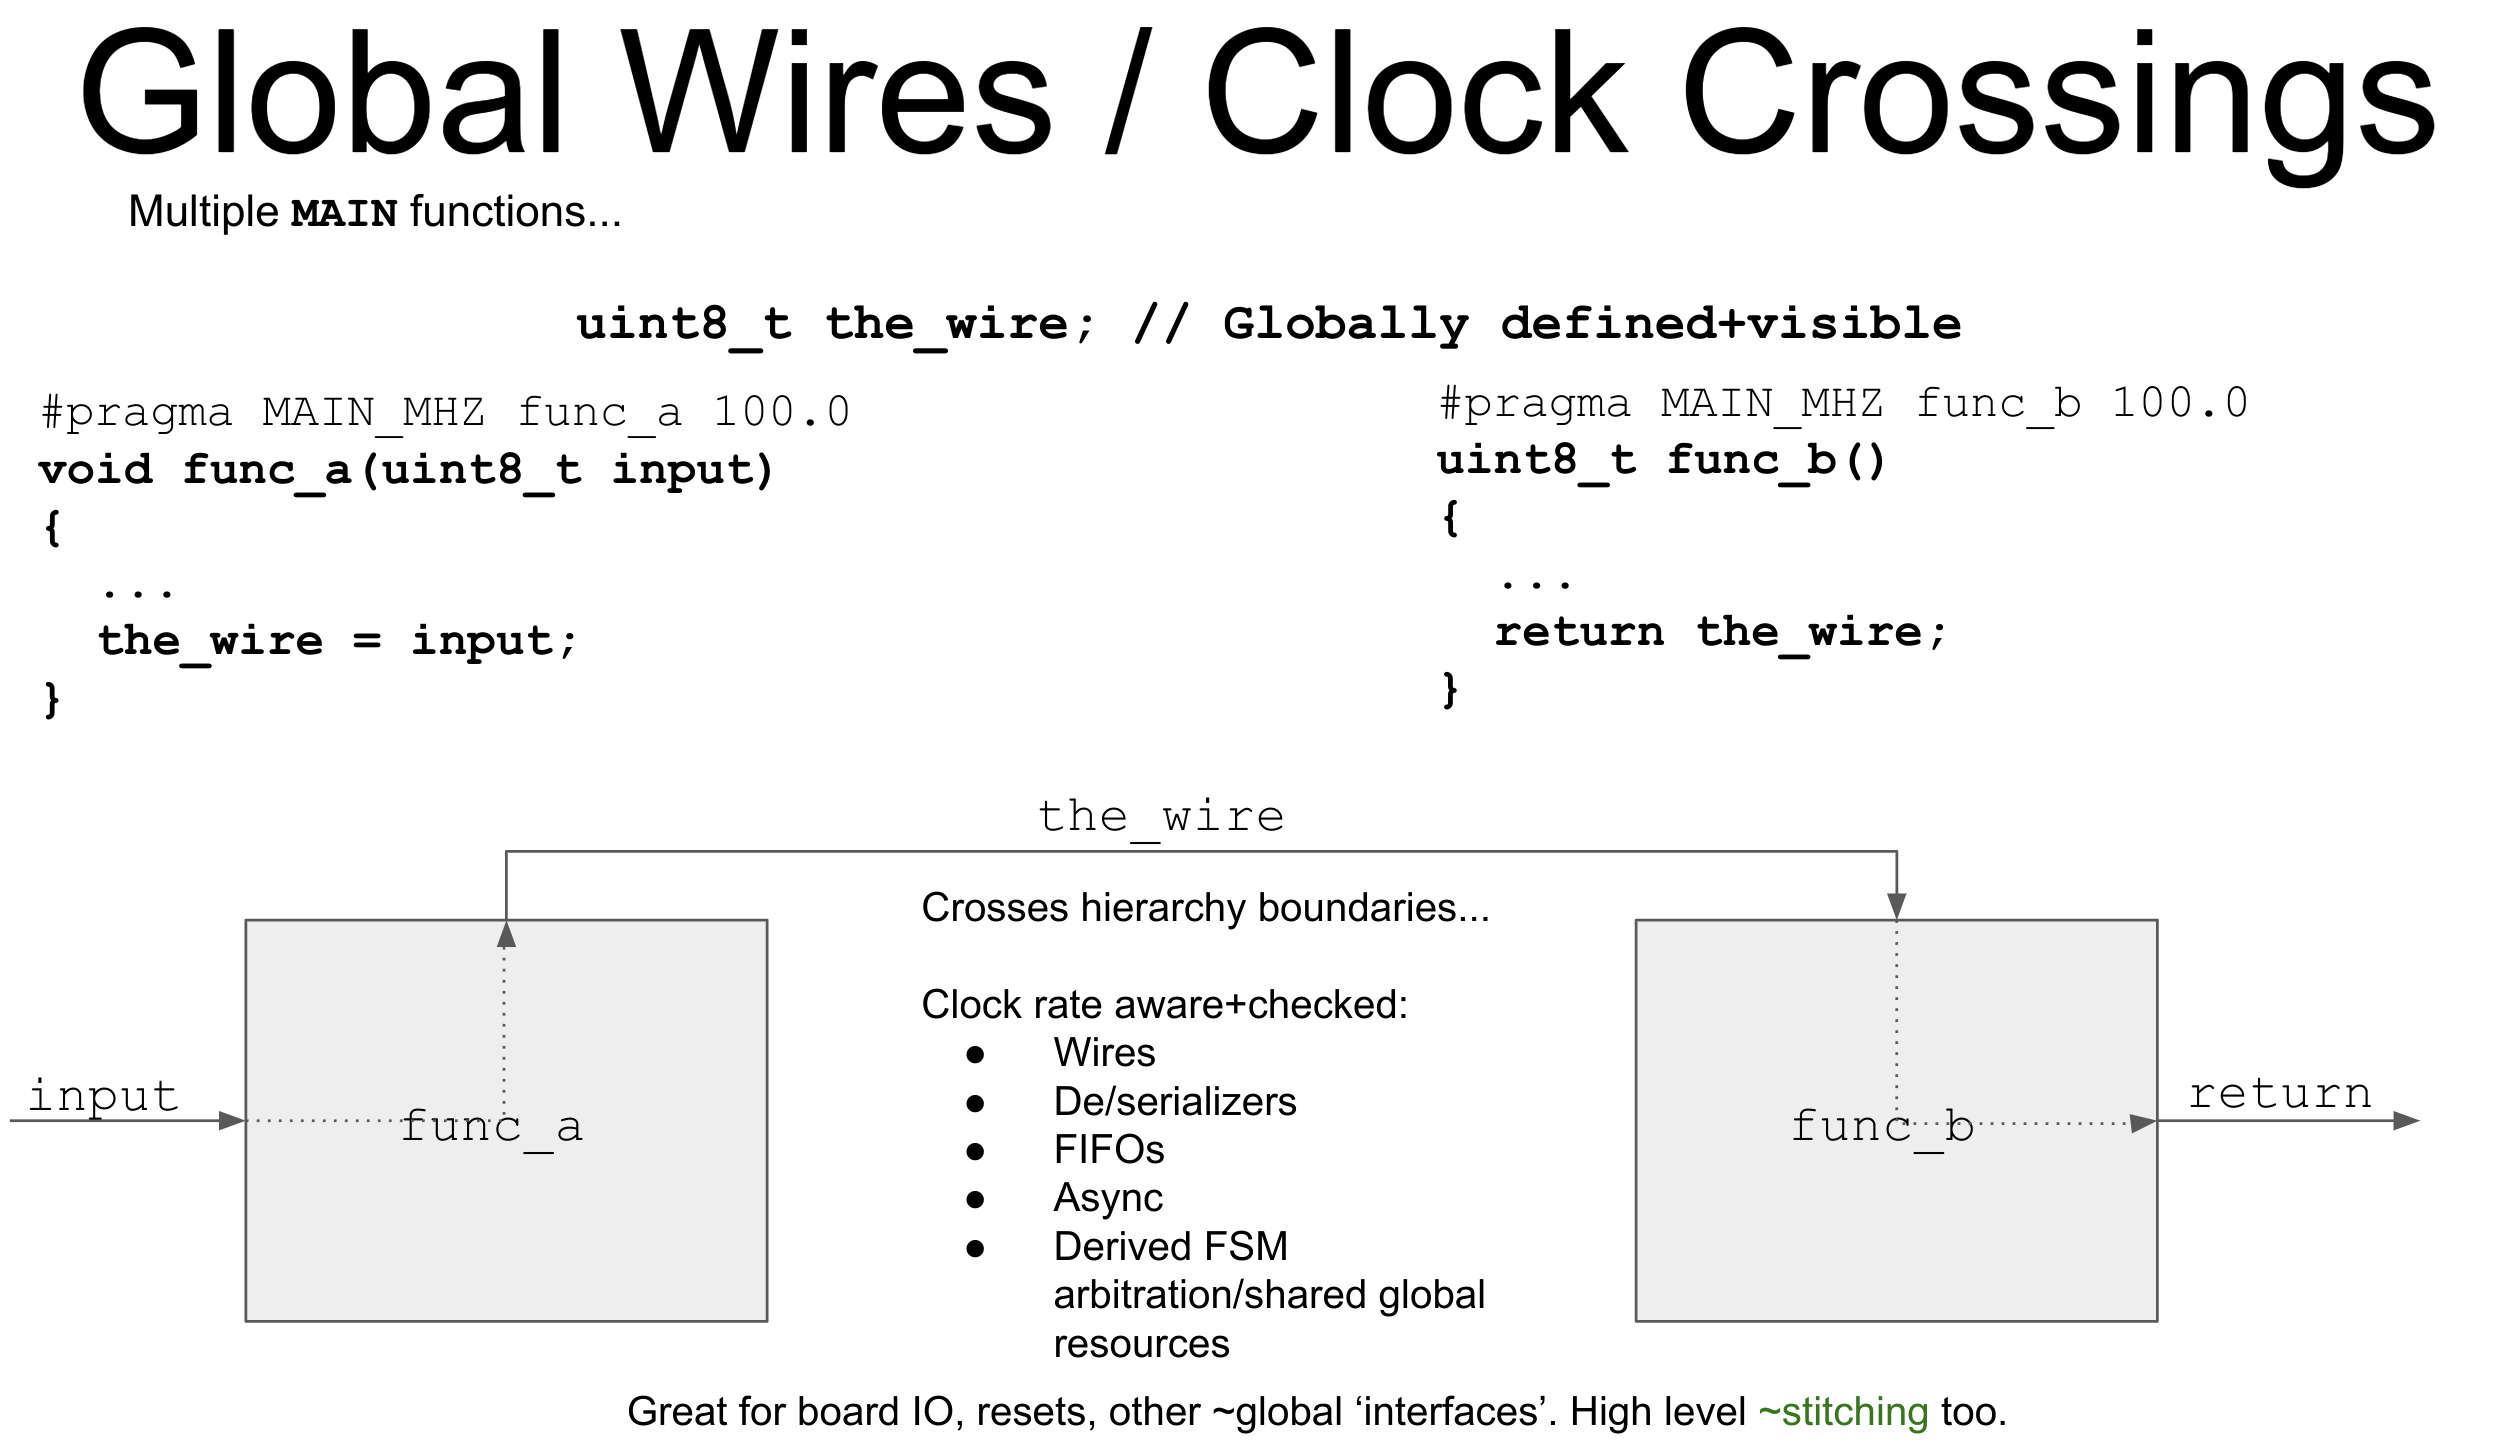 clockcrossdiagram